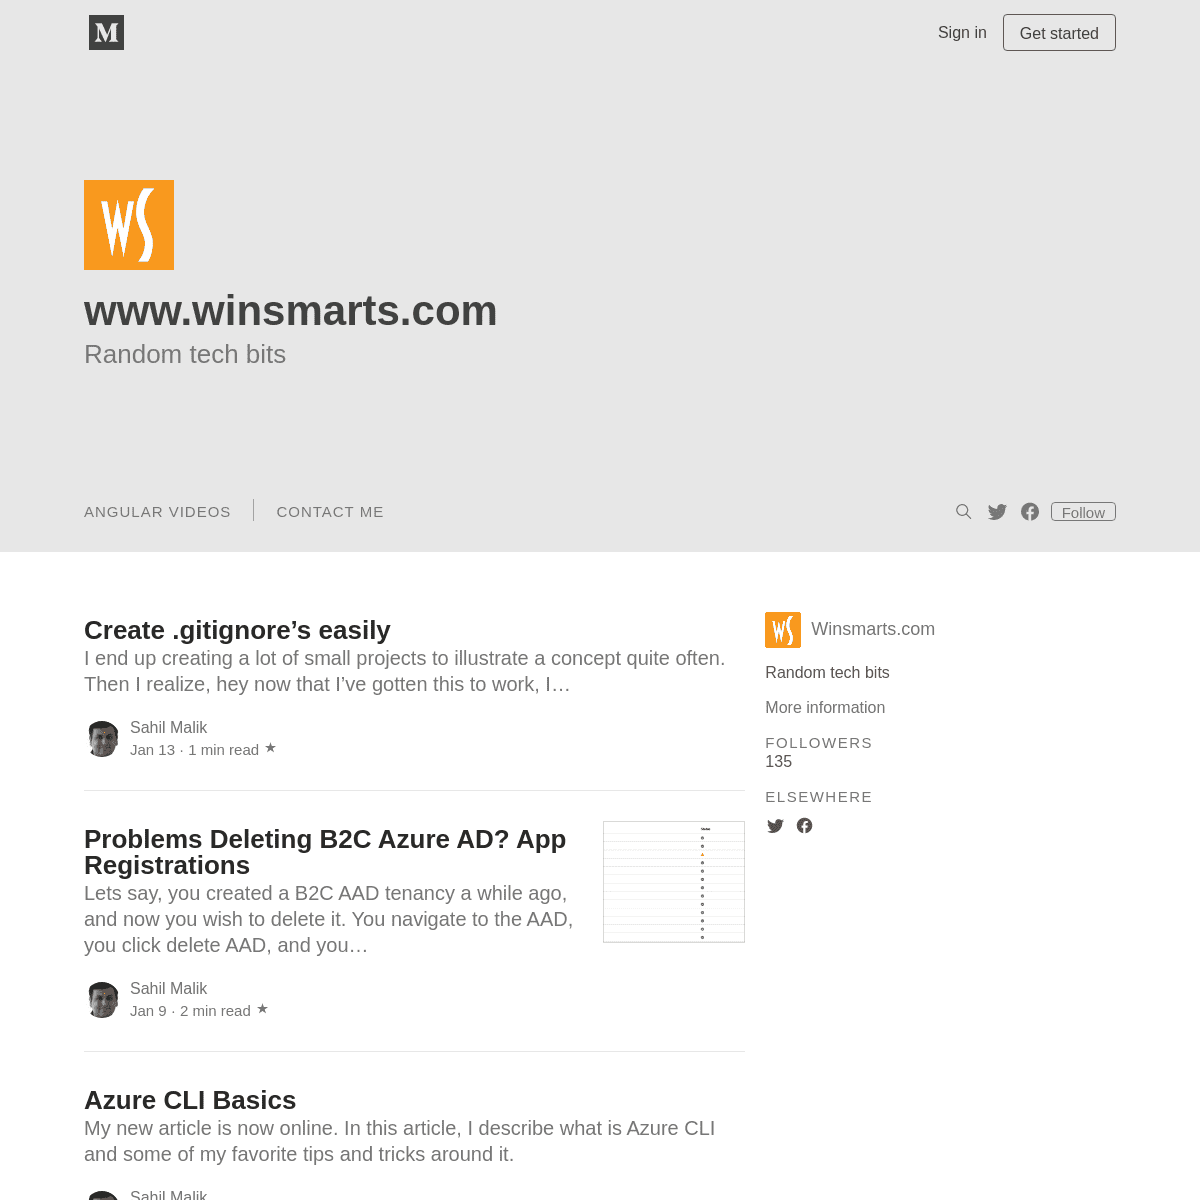 A complete backup of winsmarts.com